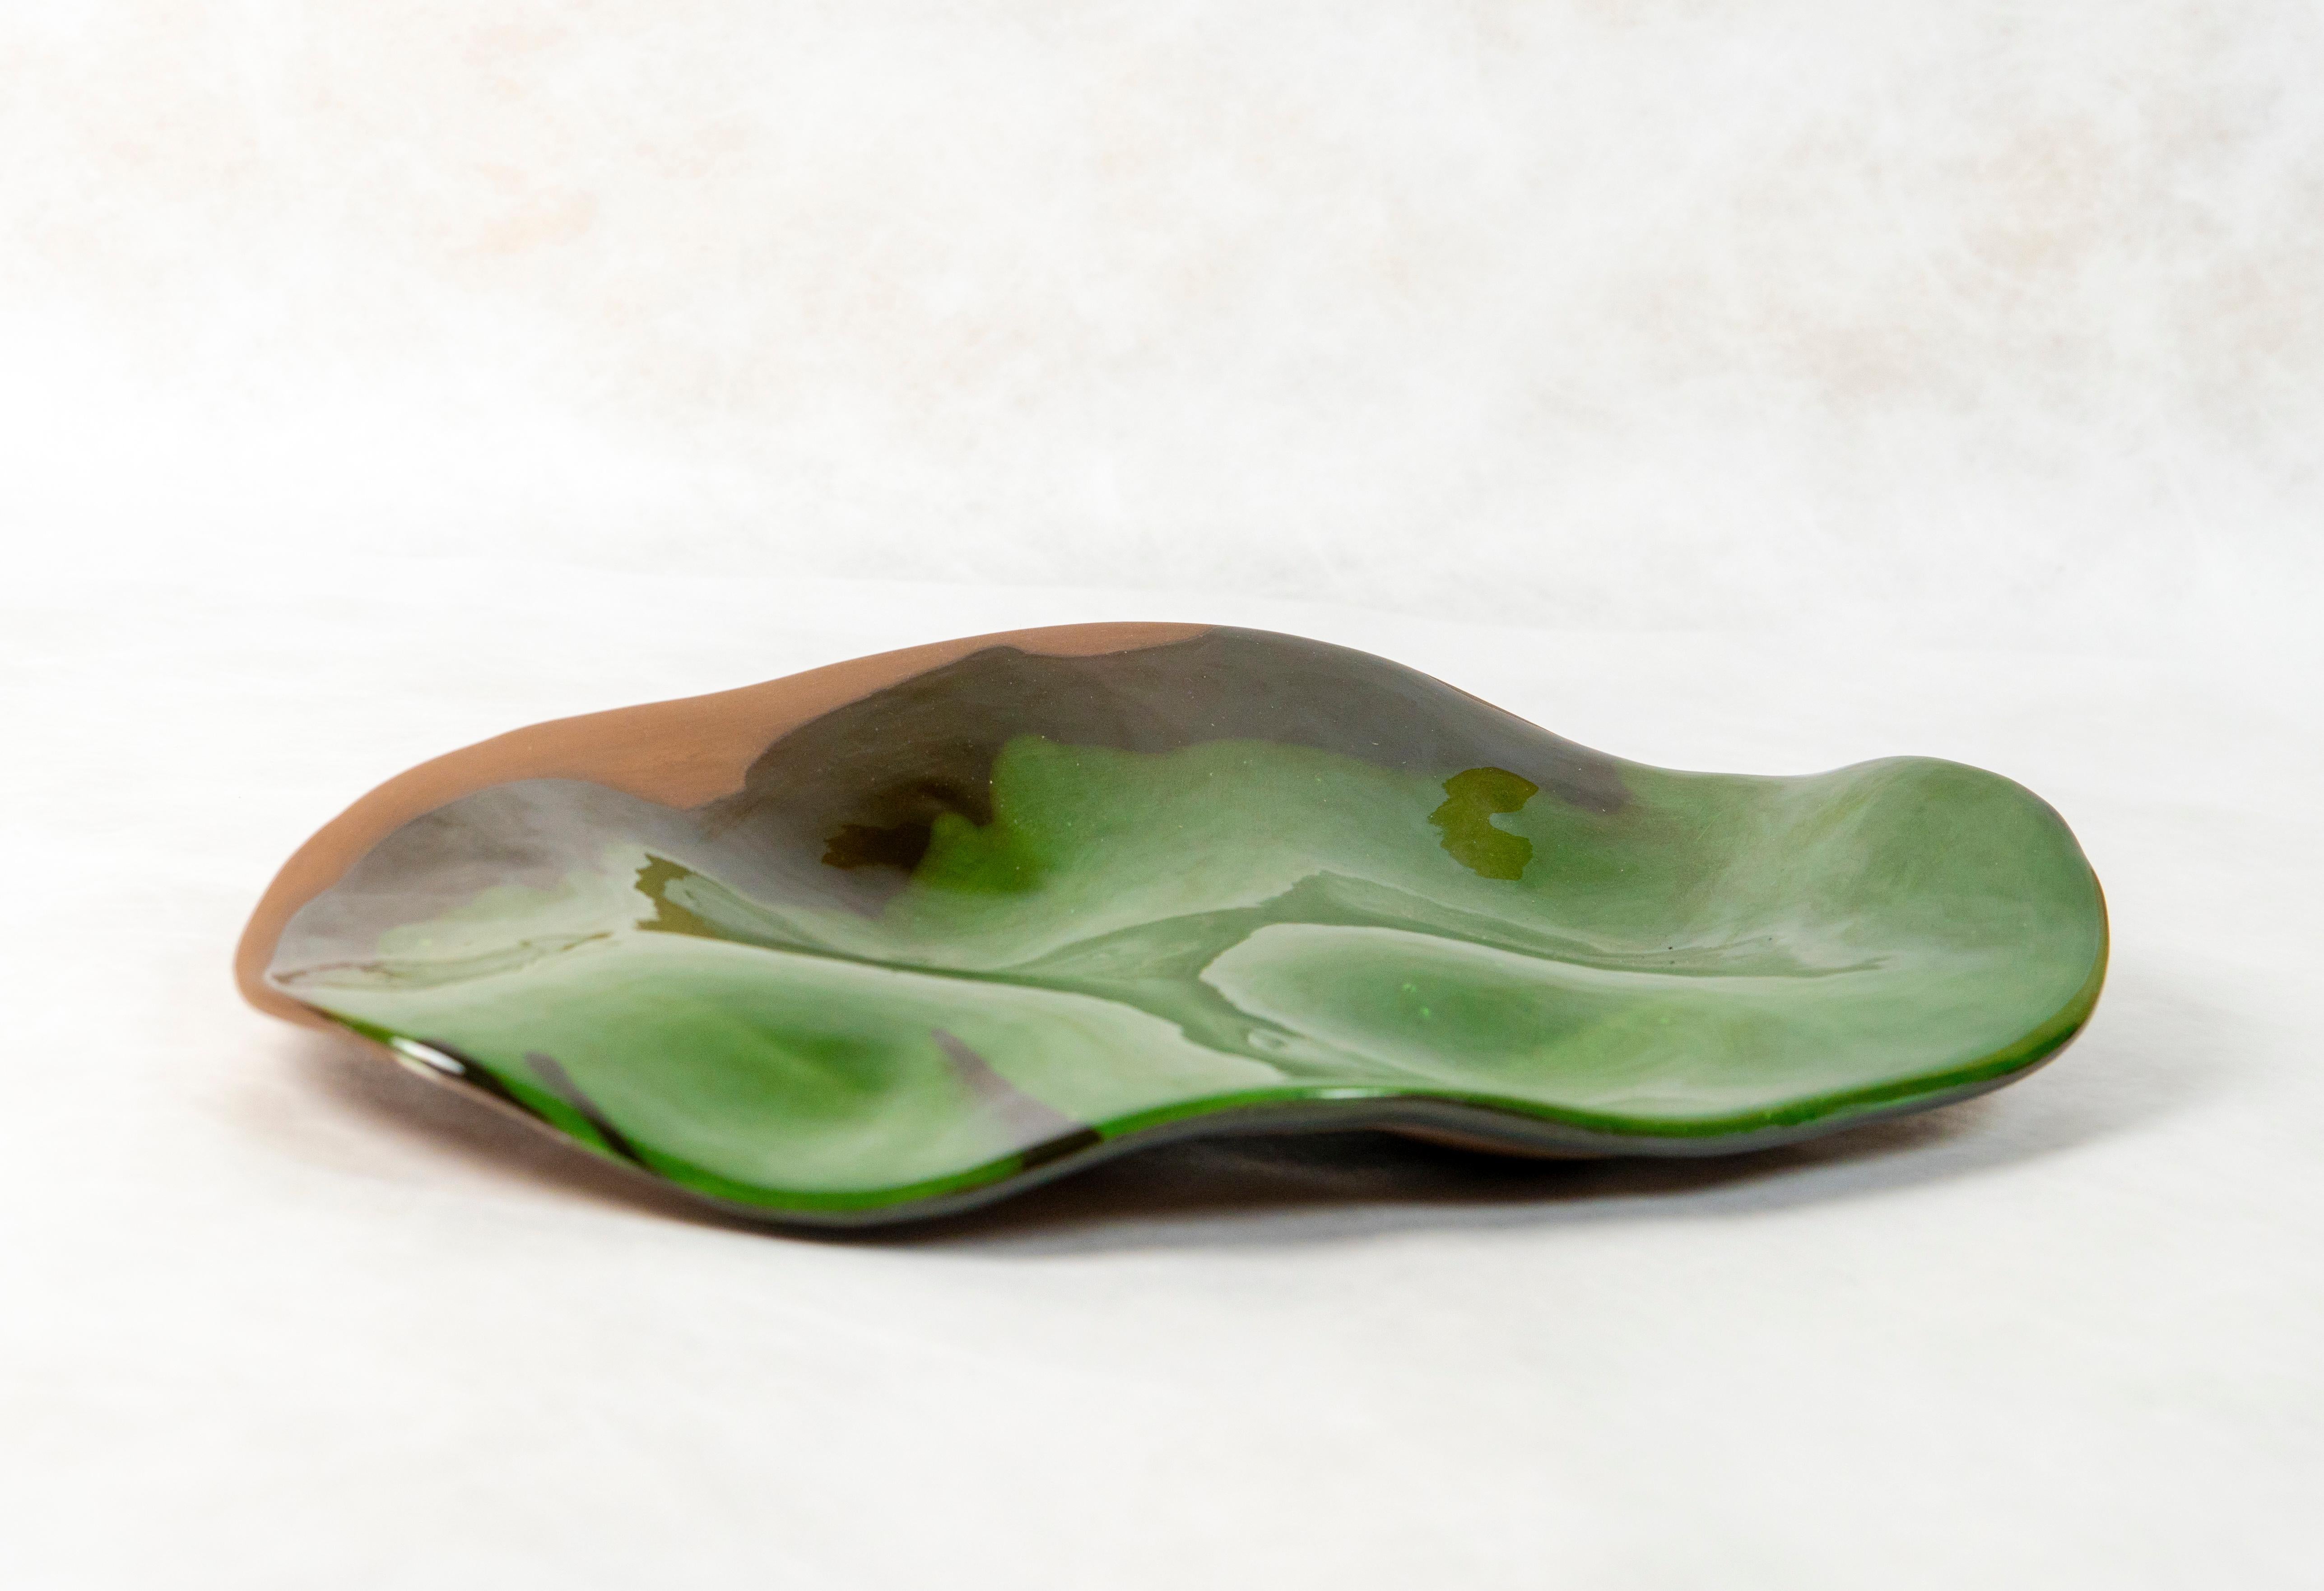 A unique centerpiece ceramic by Claire de Lavallée.

Landscape earthenware with green glaze.